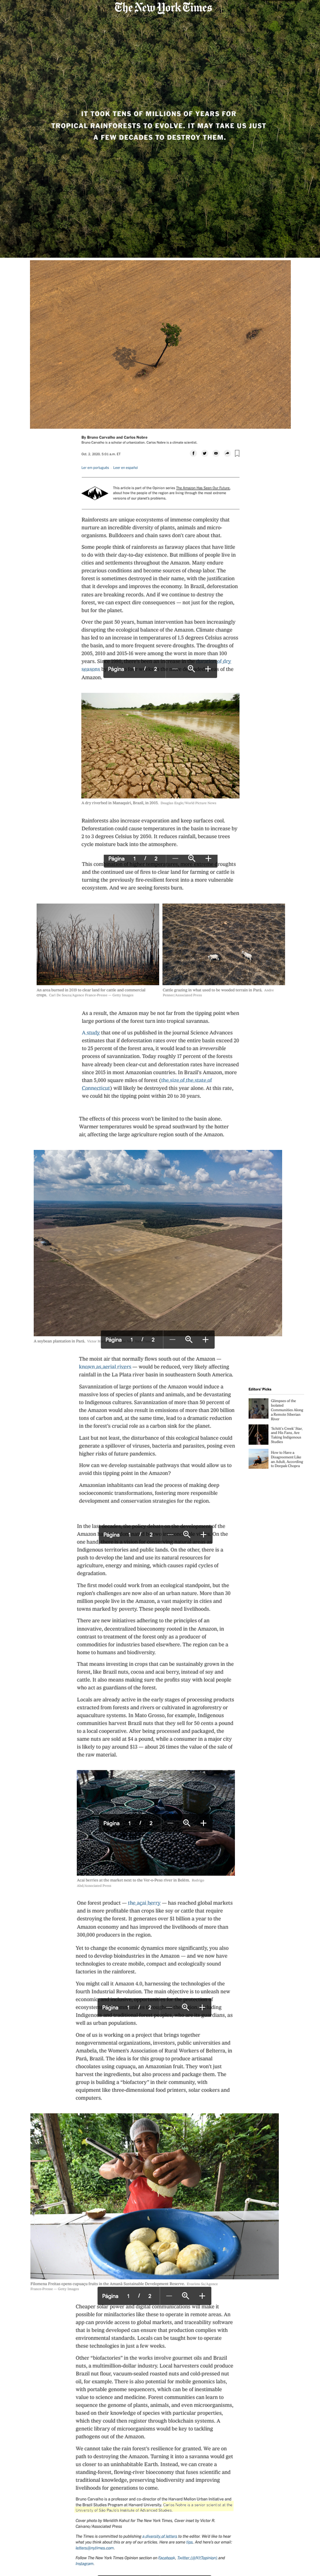 Artigo de Bruno Carvalho e Carlos Nobre sobre a Destruição da Amazônia